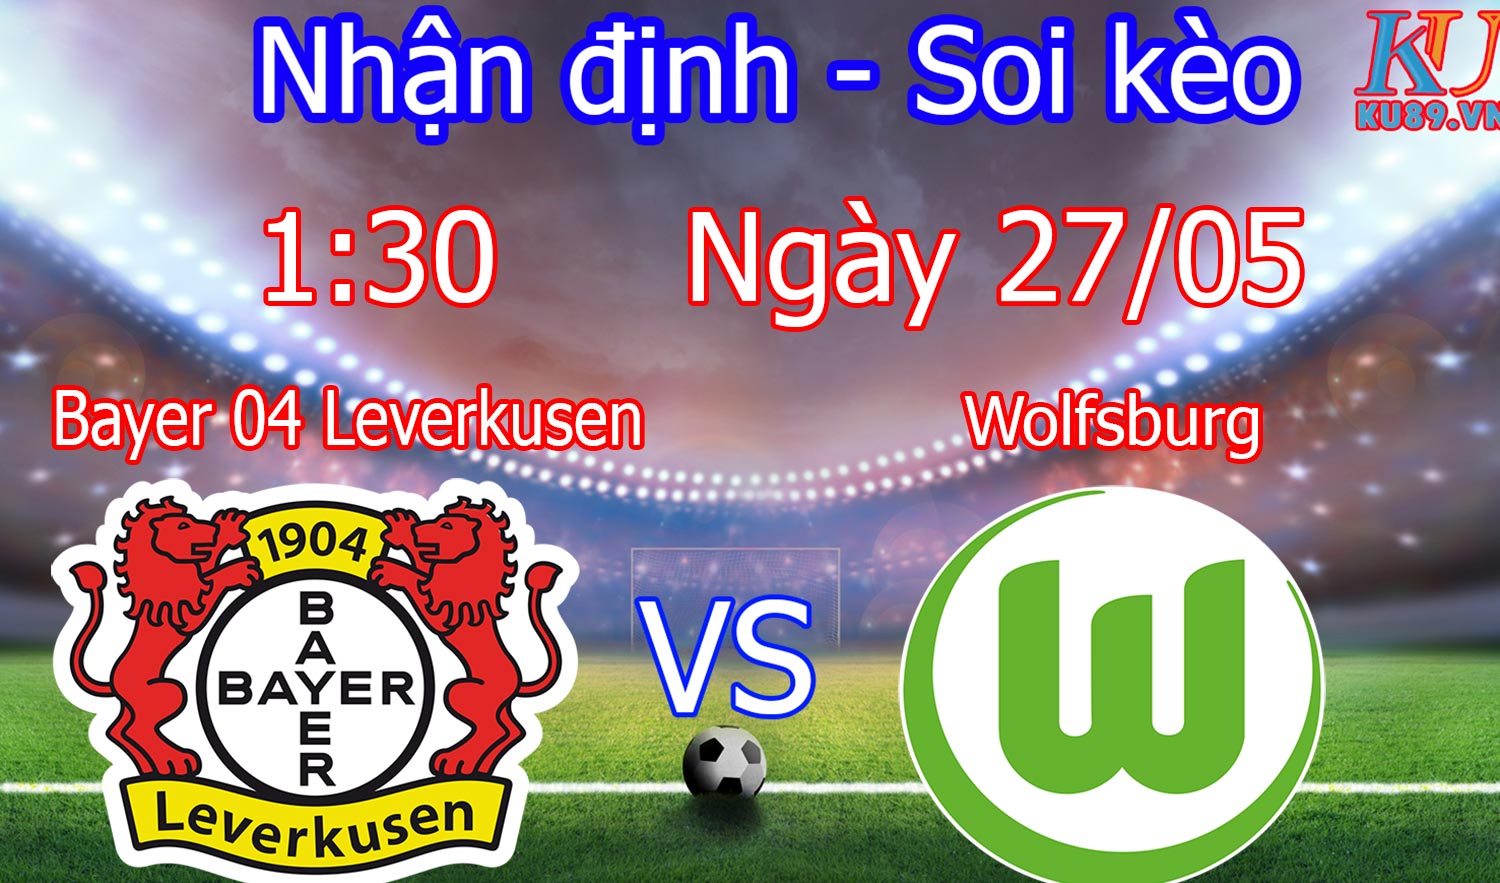 Bayer 04 Leverkusen – Wolfsburg